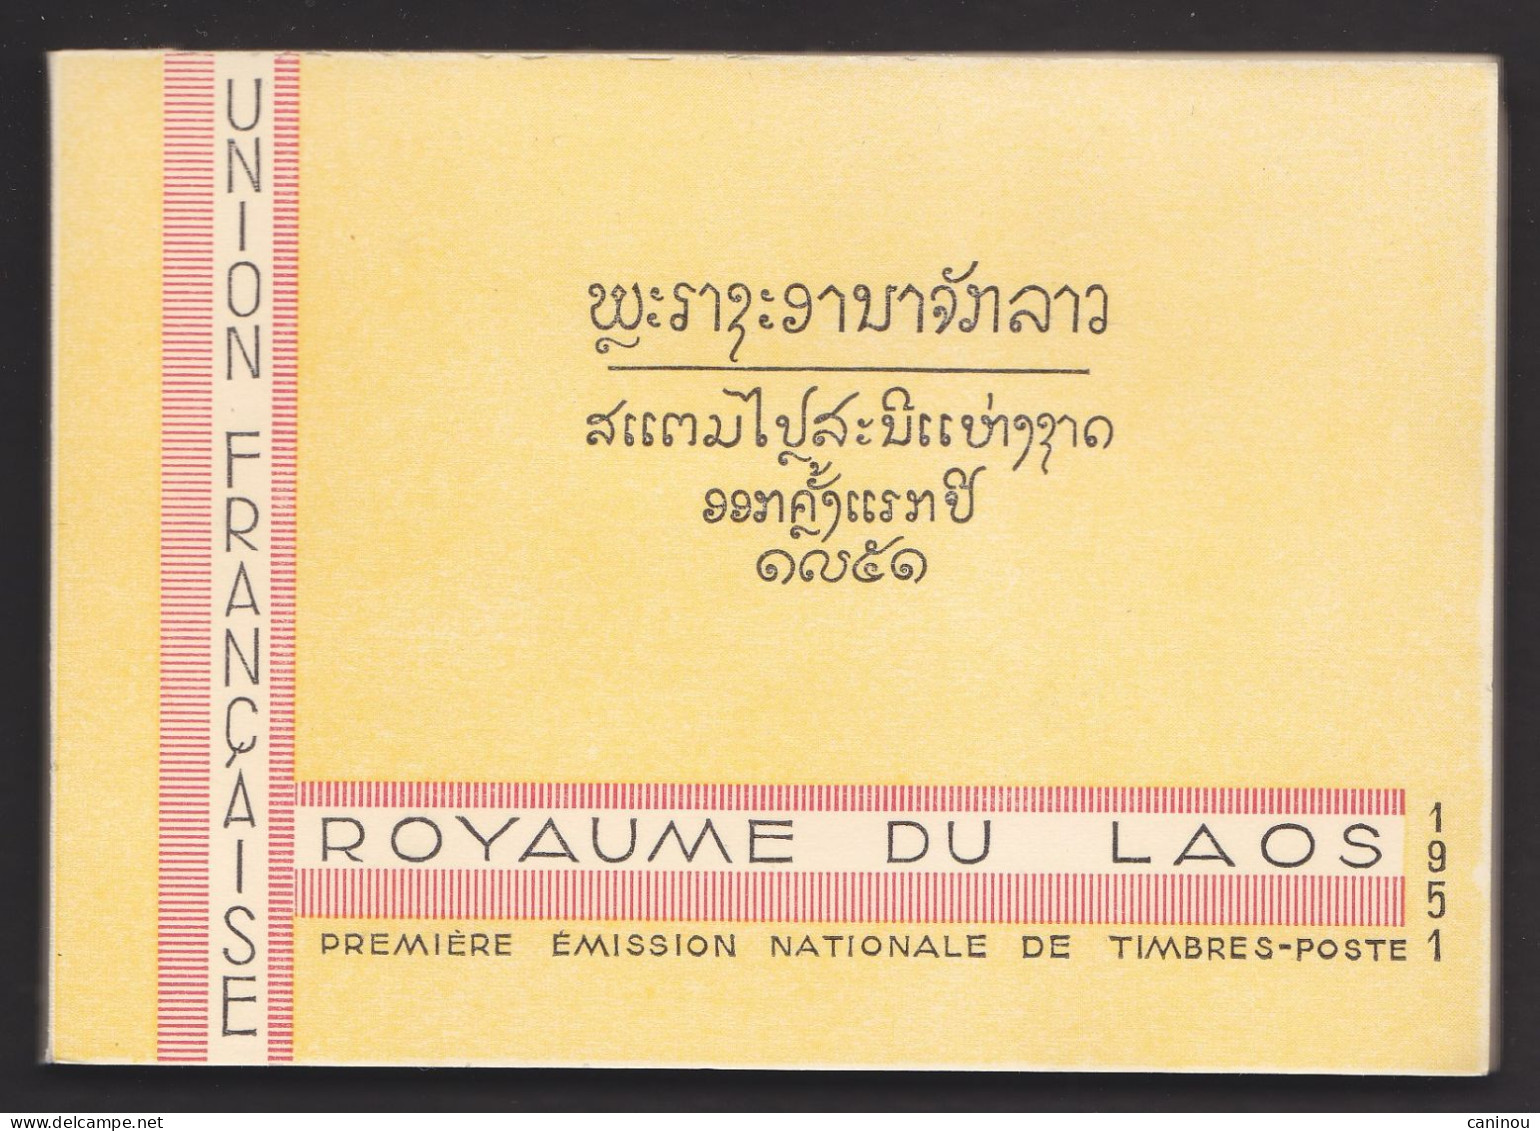 LAOS CARNET 1 BF 1 / 26  PREMIERE EMISSION DE TIMBRES-POSTE 1951 NEUF - Laos